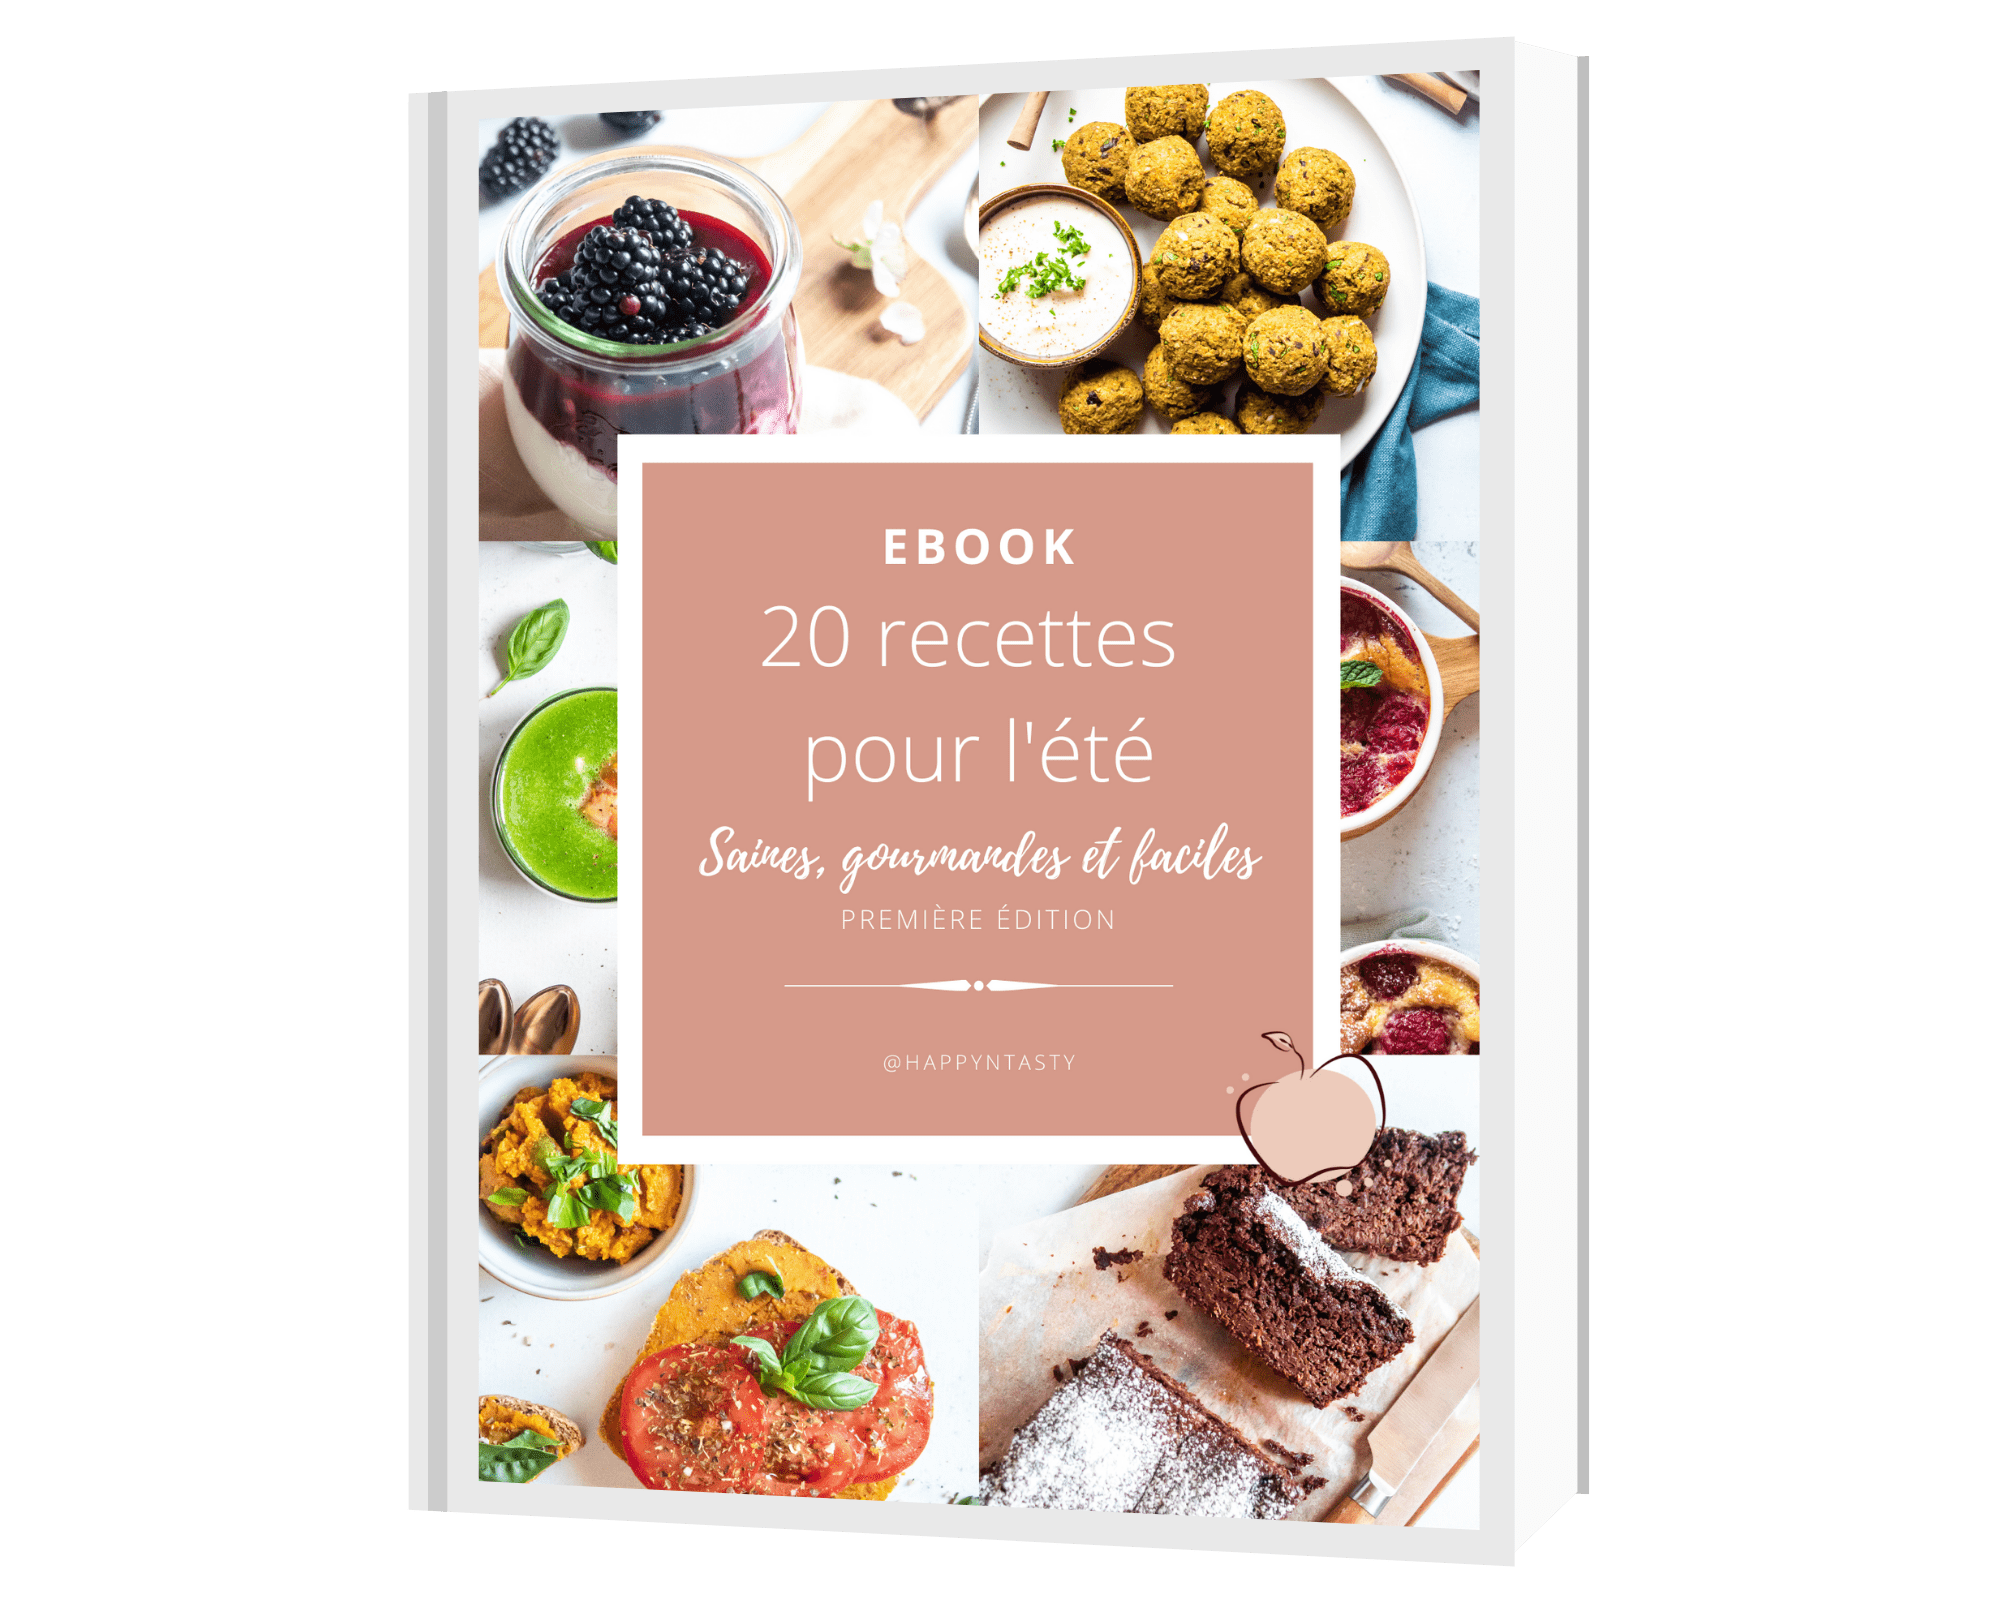 EBOOK 20 recettes pour l'été